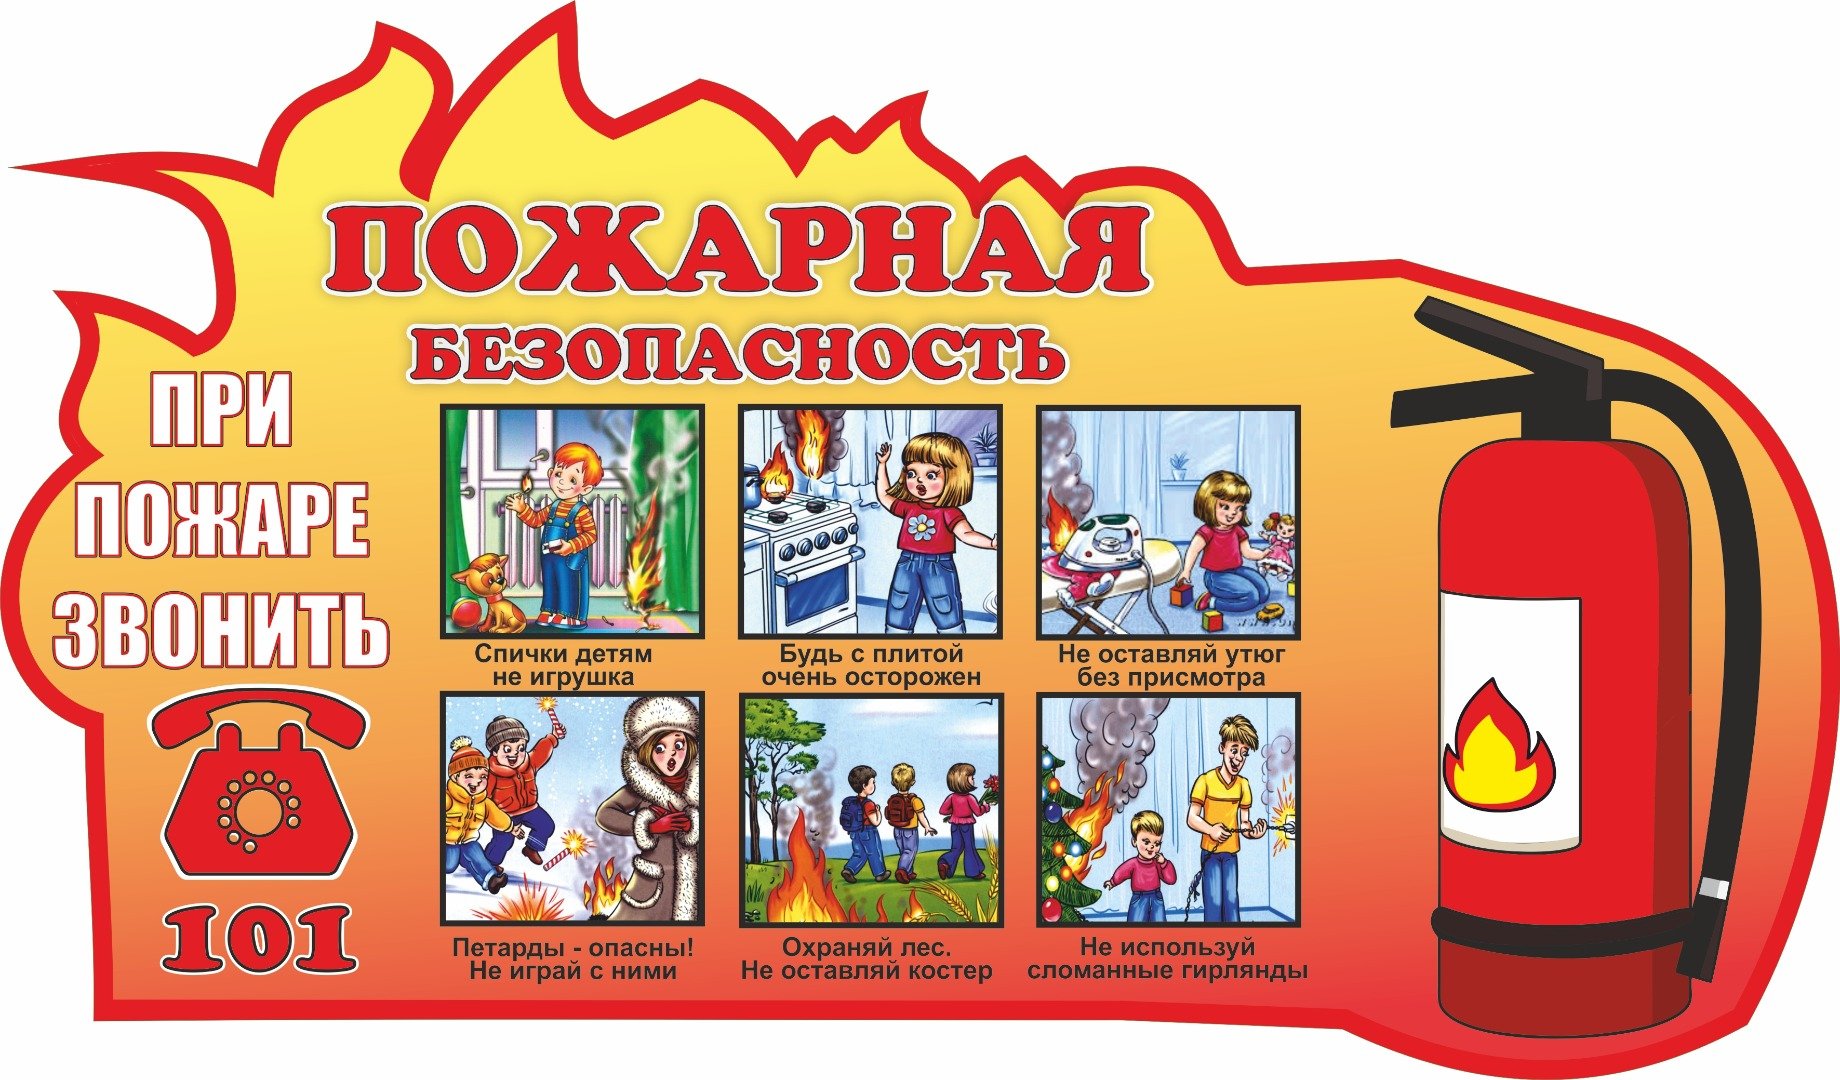 Памятка о профилактике гибели детей на пожарах и соблюдению правил пожарной безопасности.